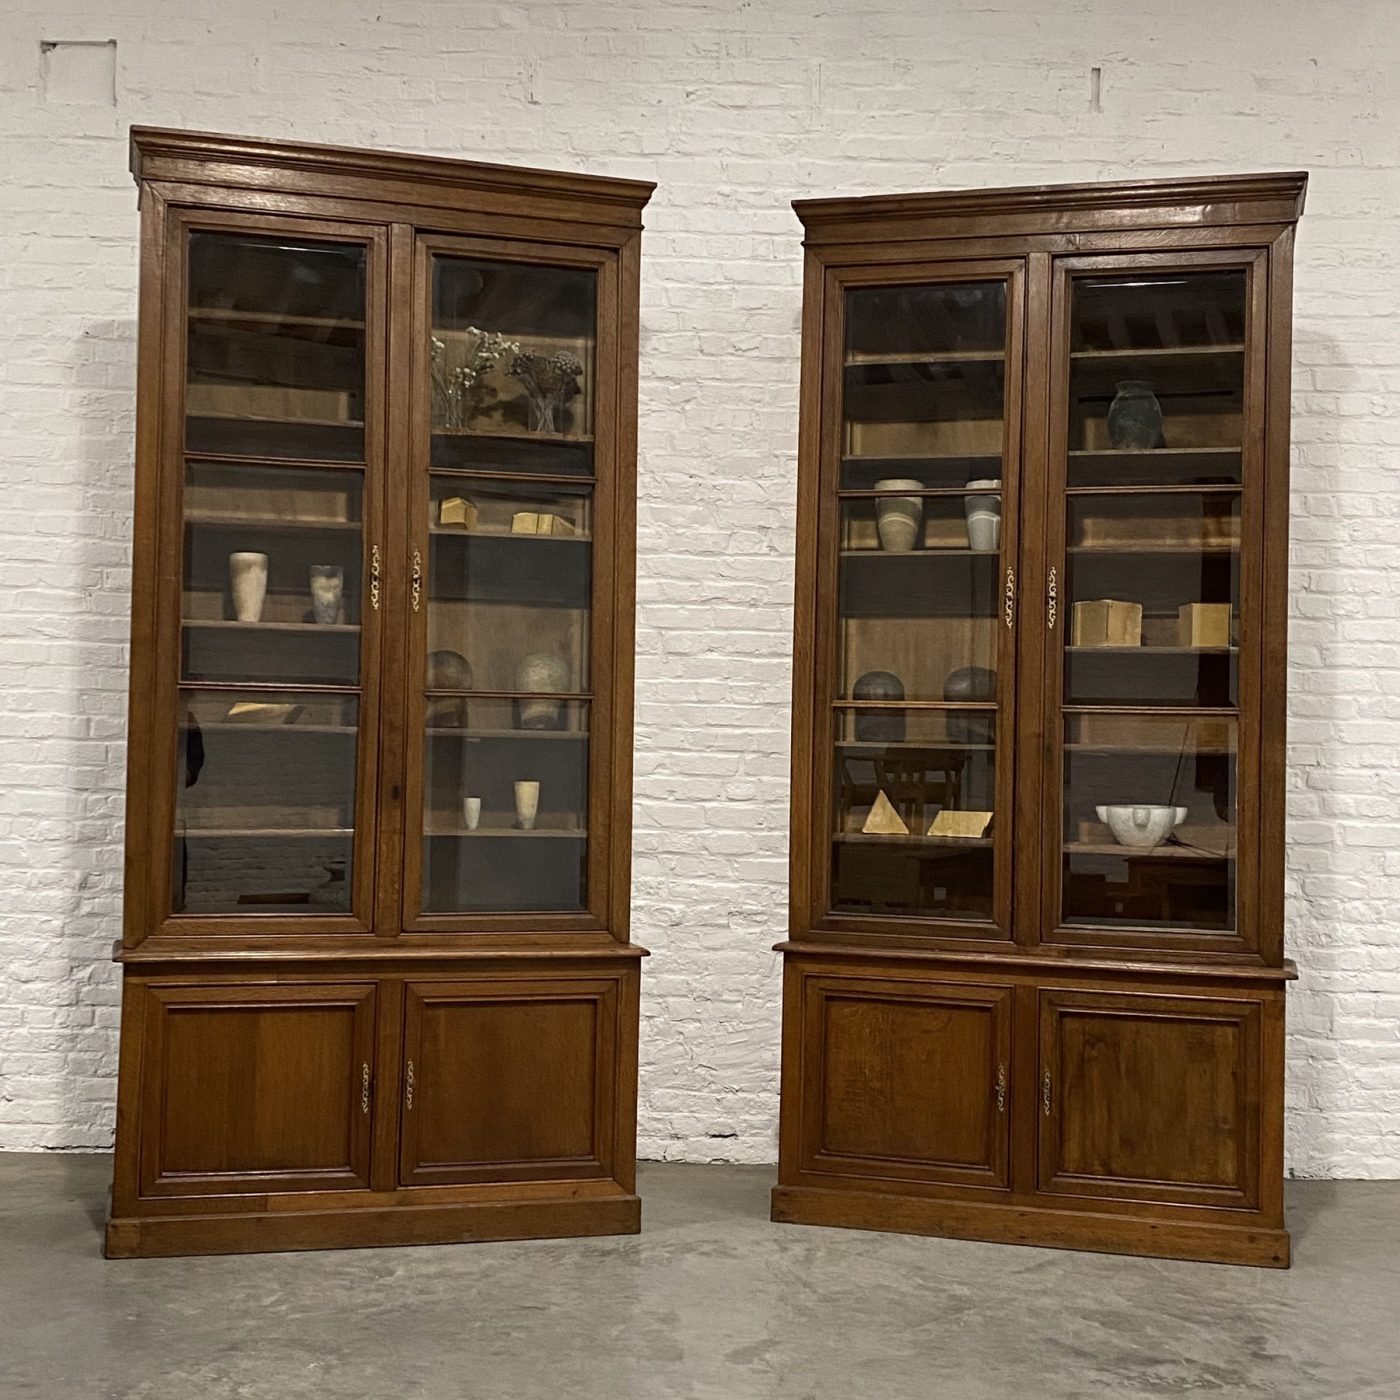 objet-vagabond-oak-bookcase0001